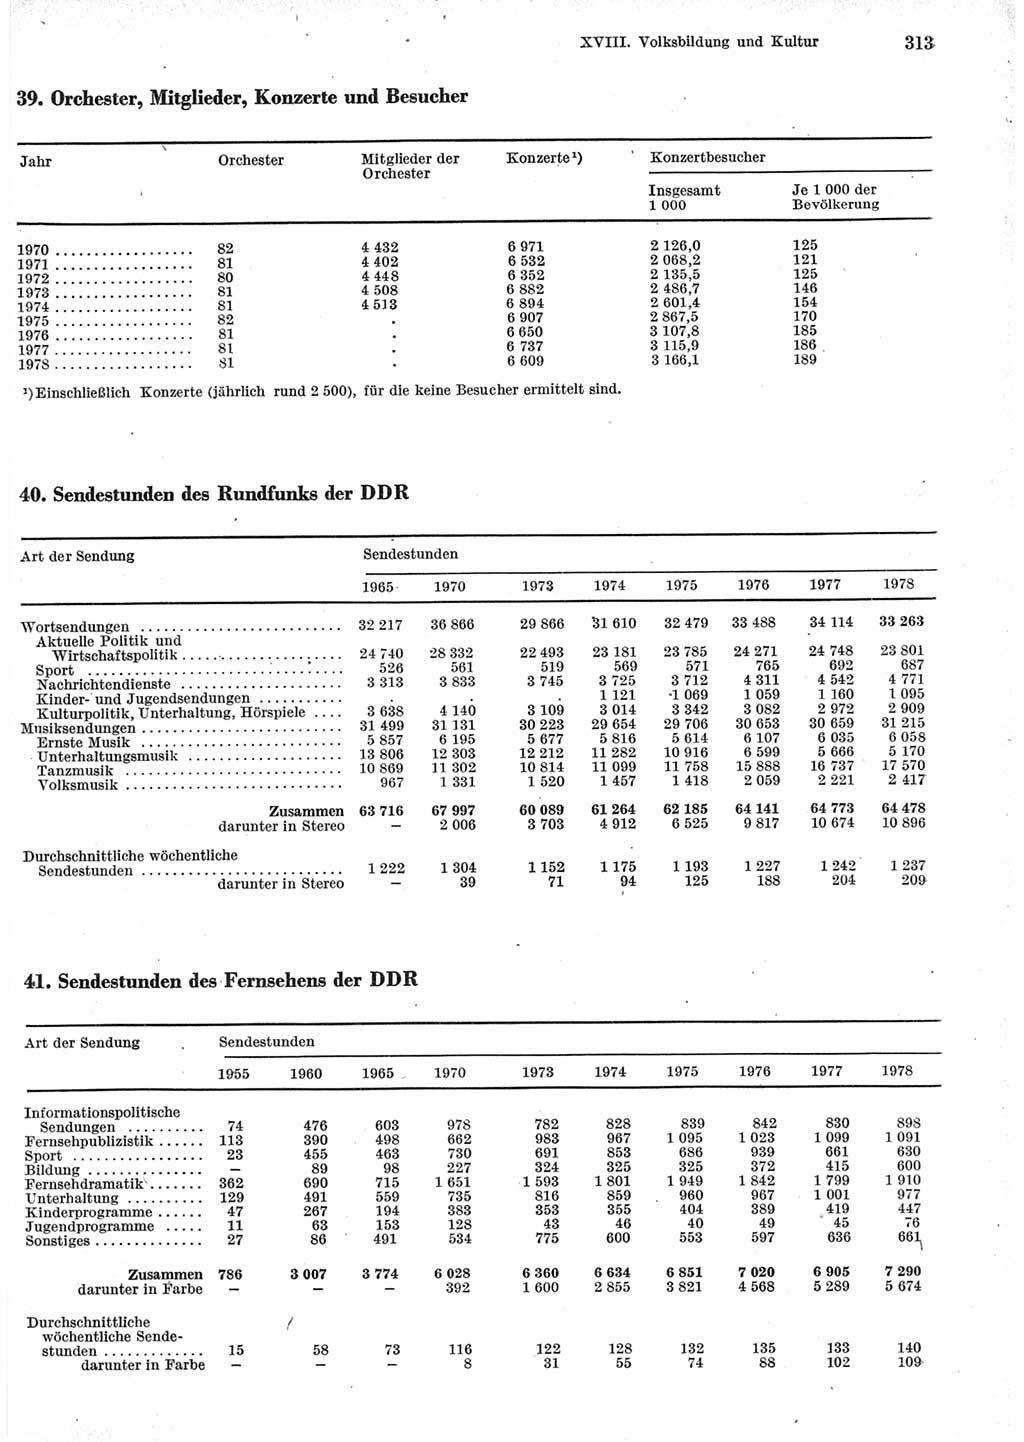 Statistisches Jahrbuch der Deutschen Demokratischen Republik (DDR) 1979, Seite 313 (Stat. Jb. DDR 1979, S. 313)